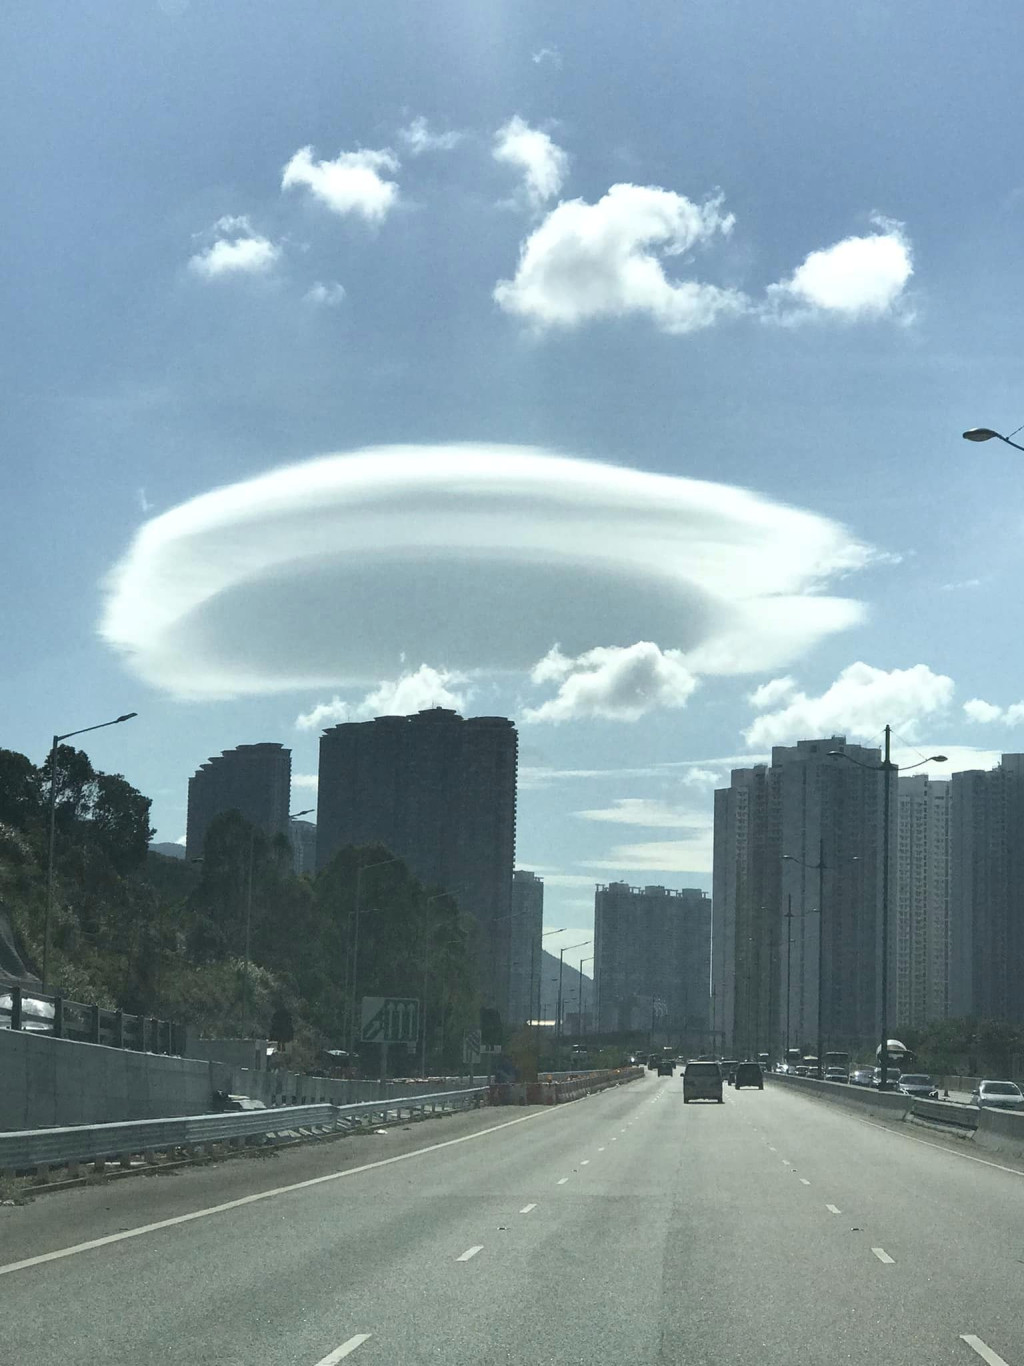 近日有網民於東涌上空見到「飛碟雲」。fb「香港風景攝影會」Chan Wai Nang攝